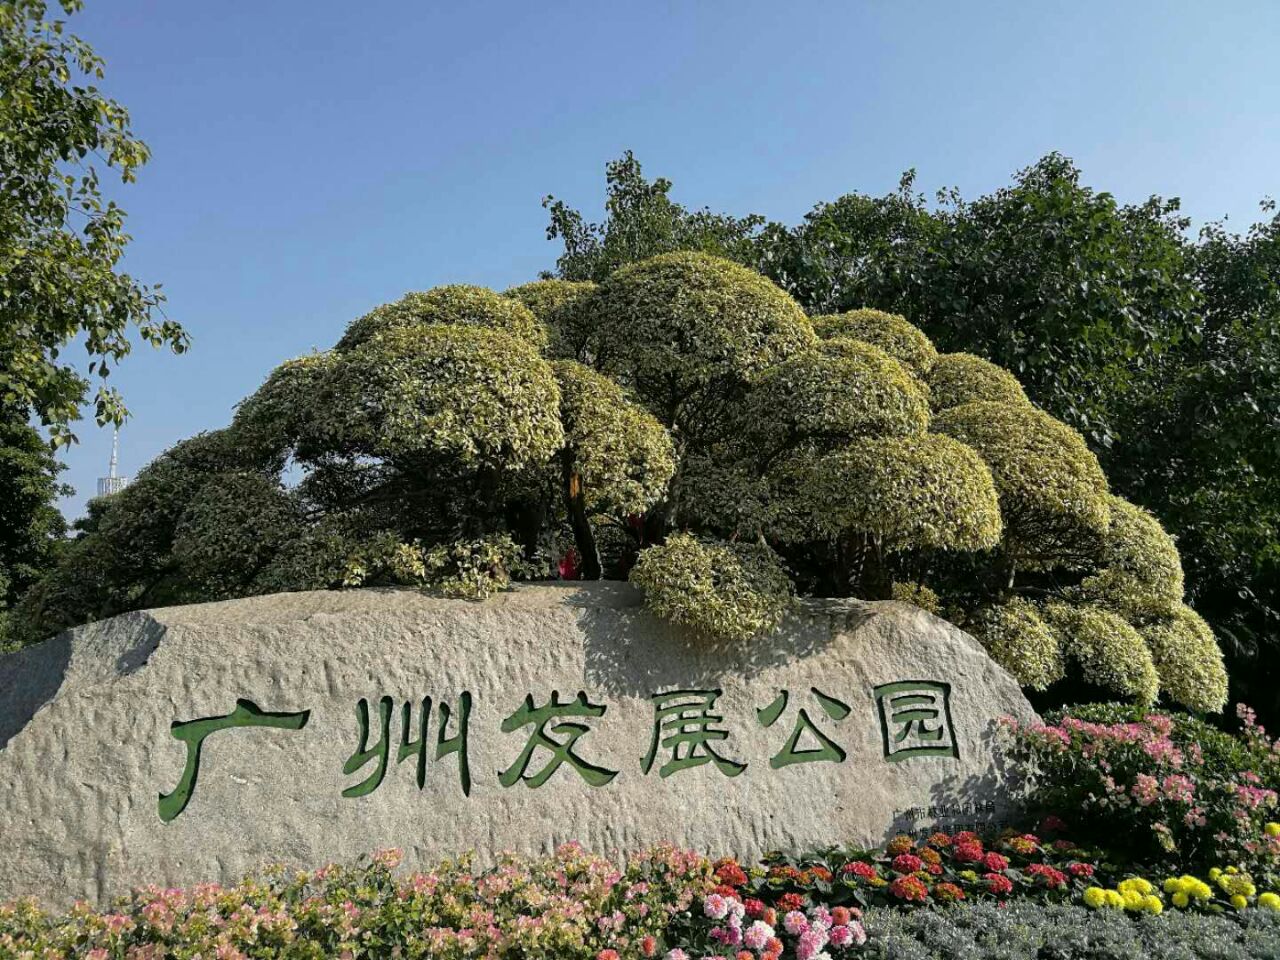 广州发展公园